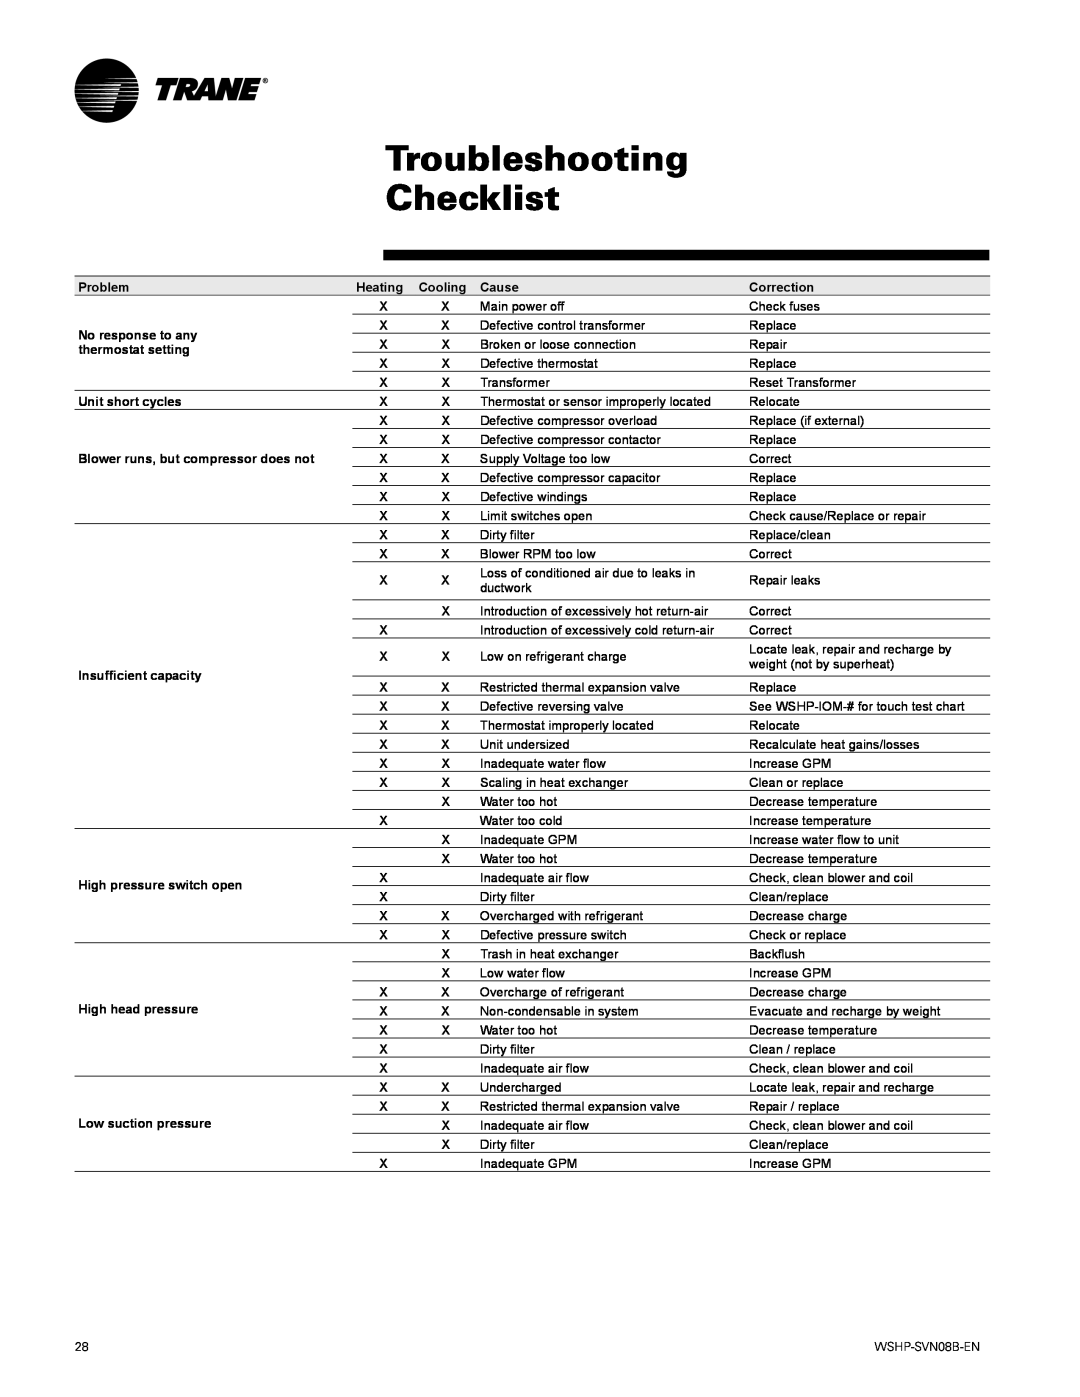 Trane GETB manual Troubleshooting Checklist 